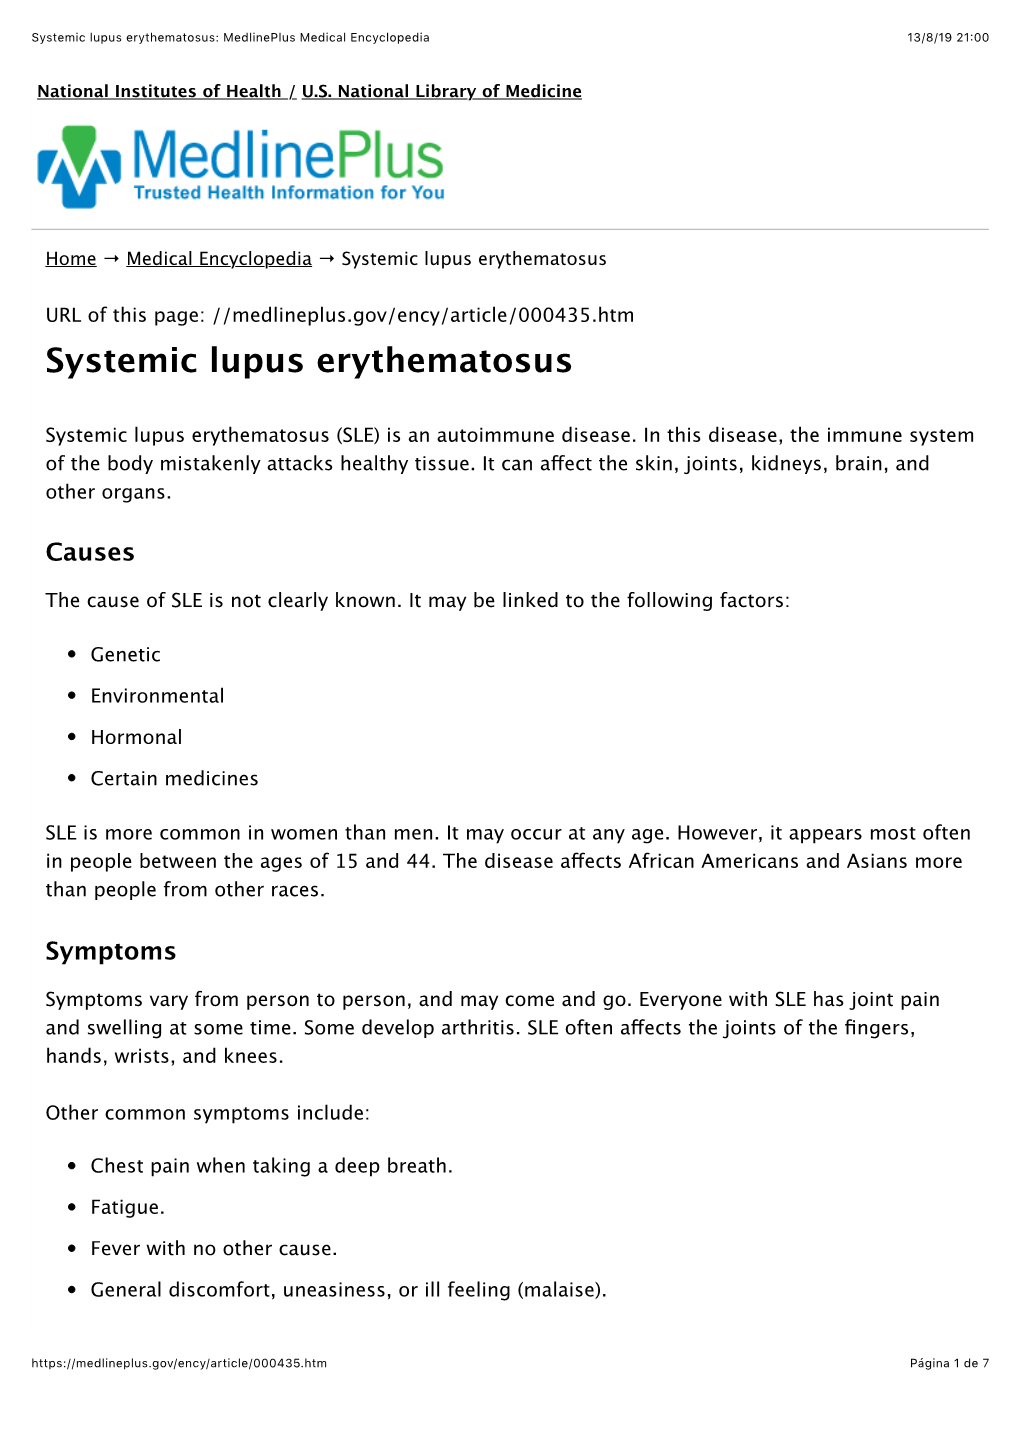 Systemic Lupus Erythematosus: Medlineplus Medical Encyclopedia 13/8/19 21:00